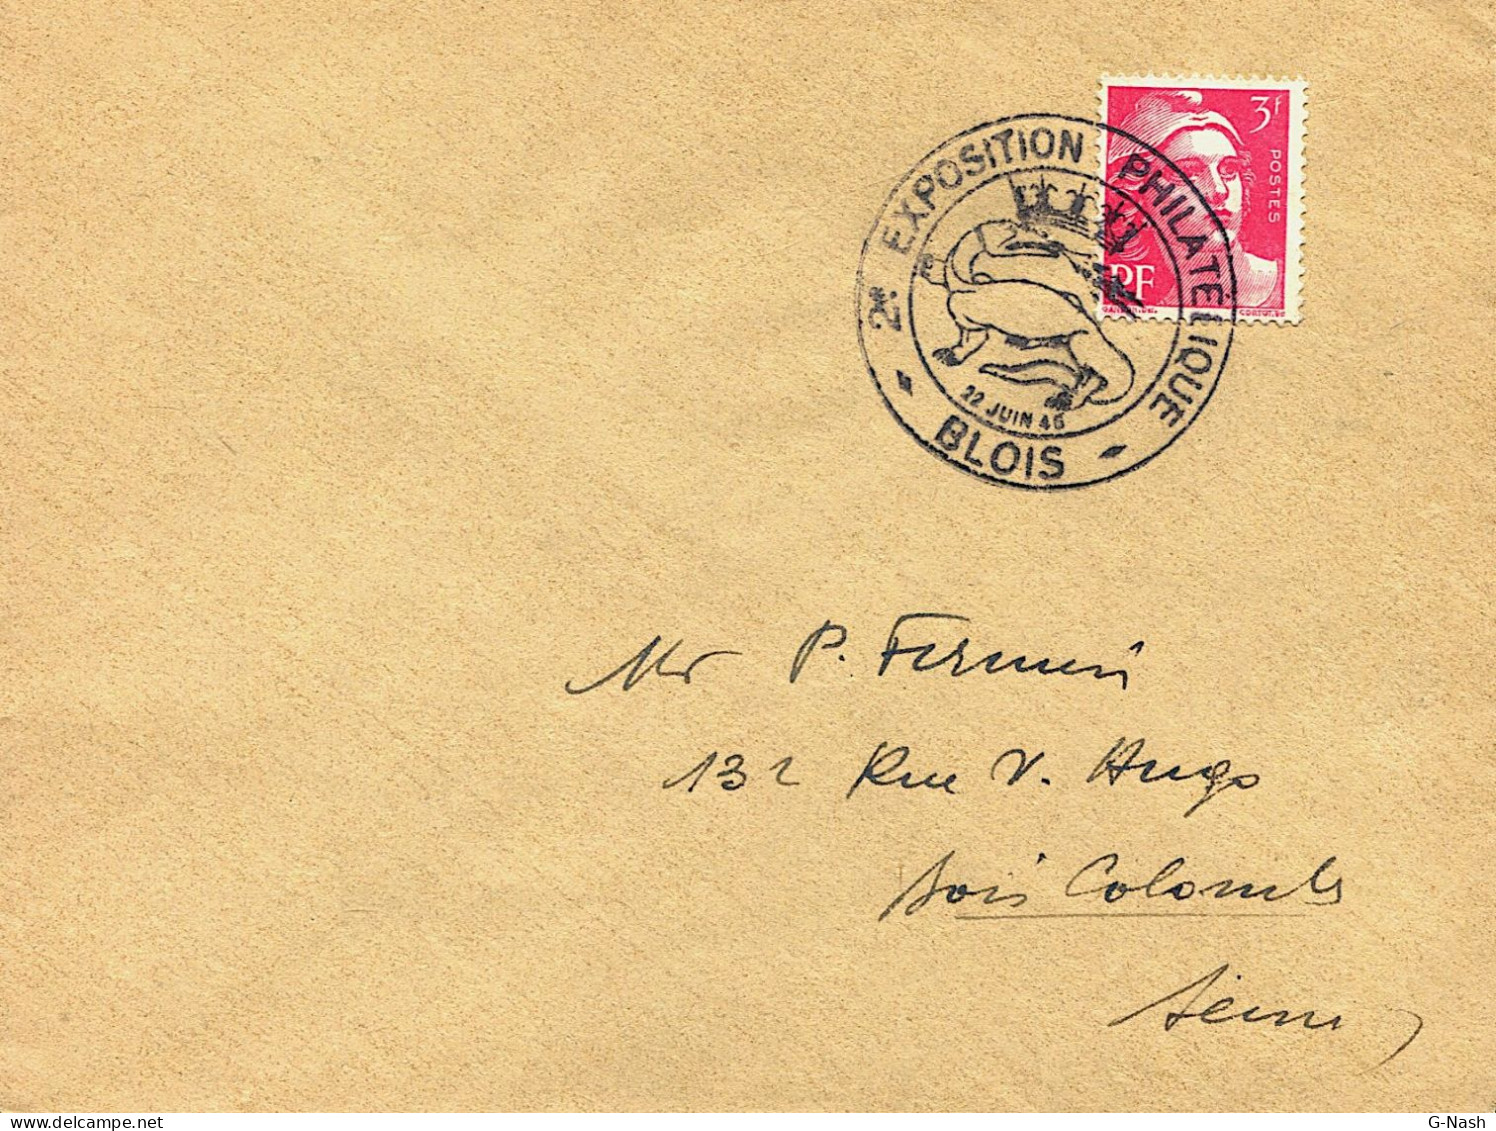 Exposition Philatélique – Blois Le 22 Juin 1945 - Commemorative Postmarks